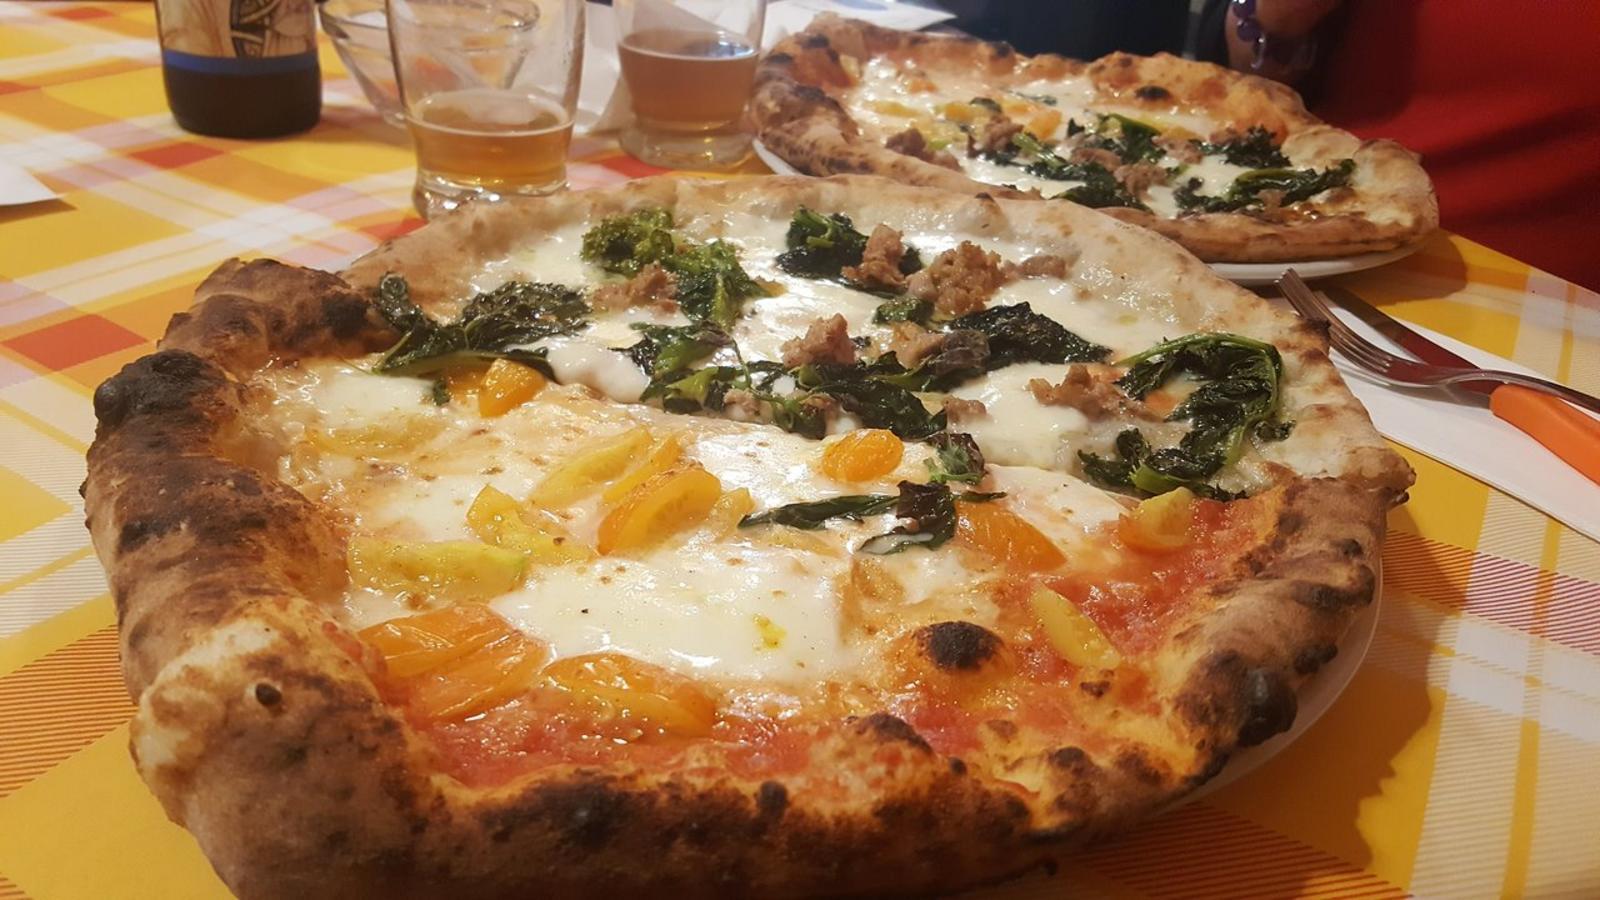 Miglior pizzeria a Foggia - Pizza e Sfizi | Localtourism.it